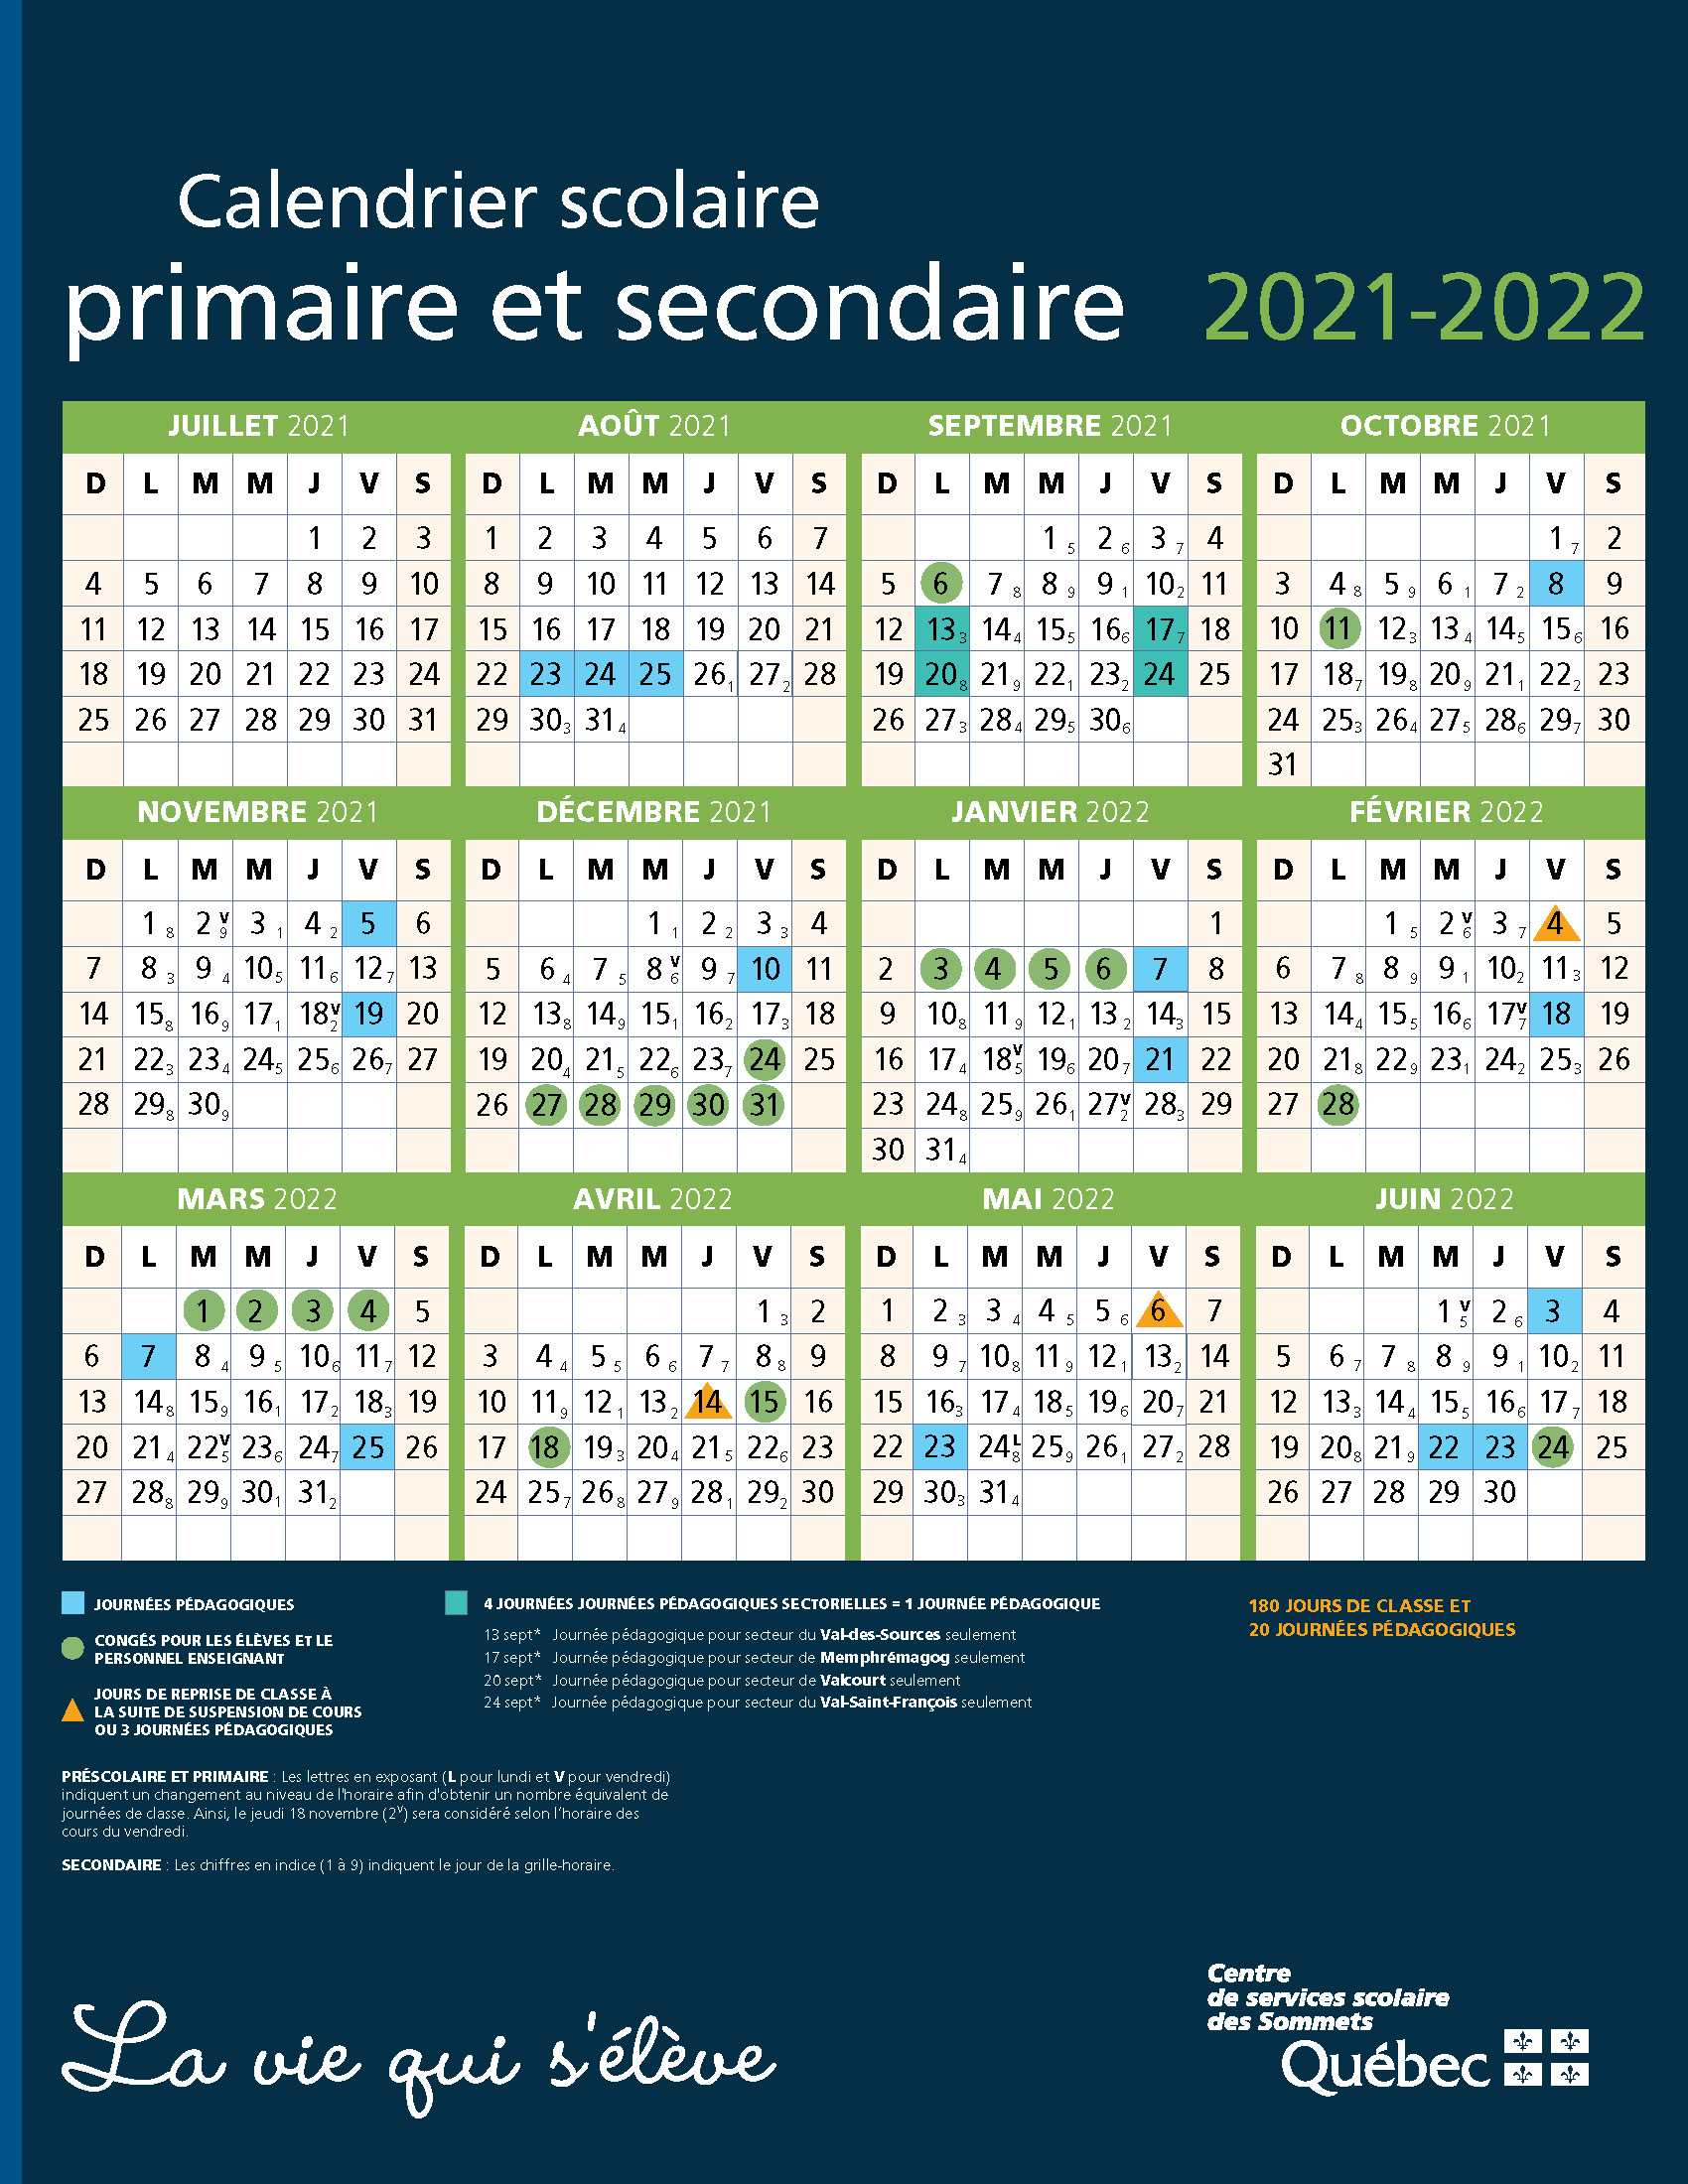 CSDS_calendrier_2020-2021_MOD-V2